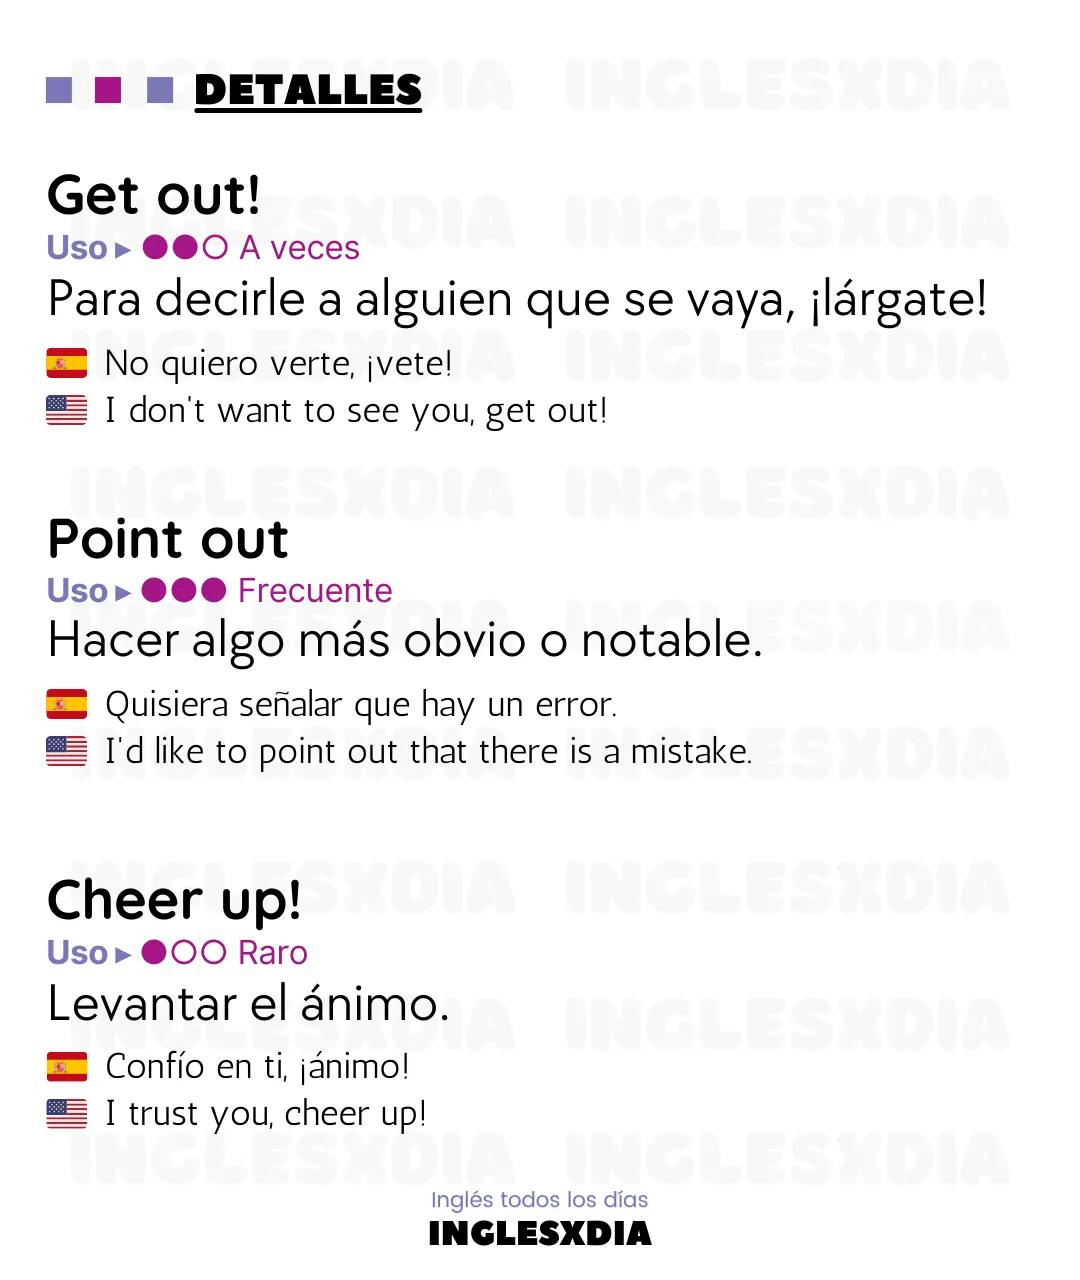 Curso de inglés en línea: frases en inglés y español cortas · Get out, get better...